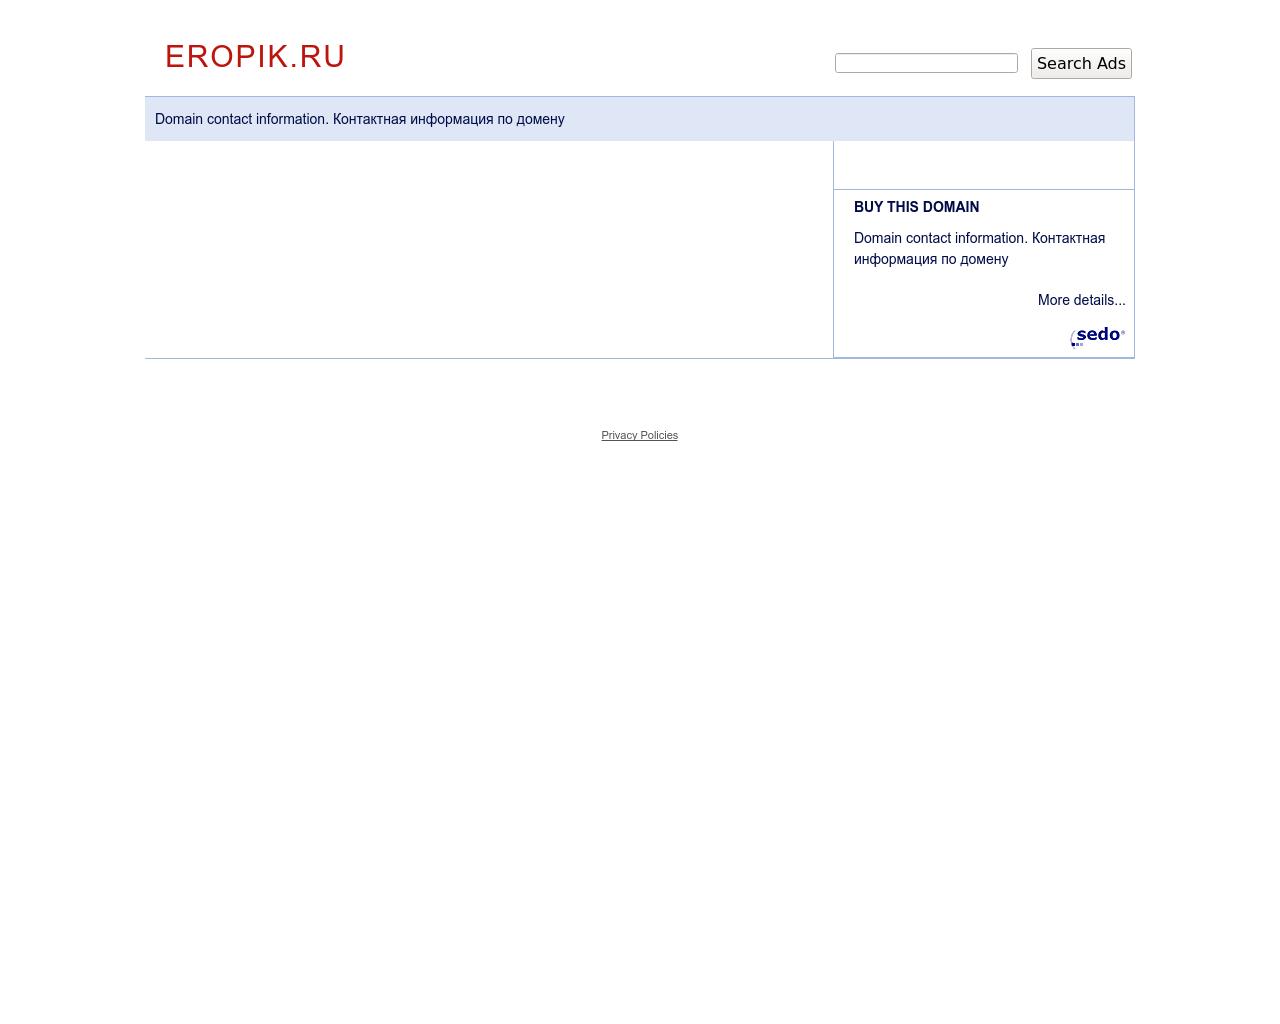 Изображение сайта eropik.ru в разрешении 1280x1024